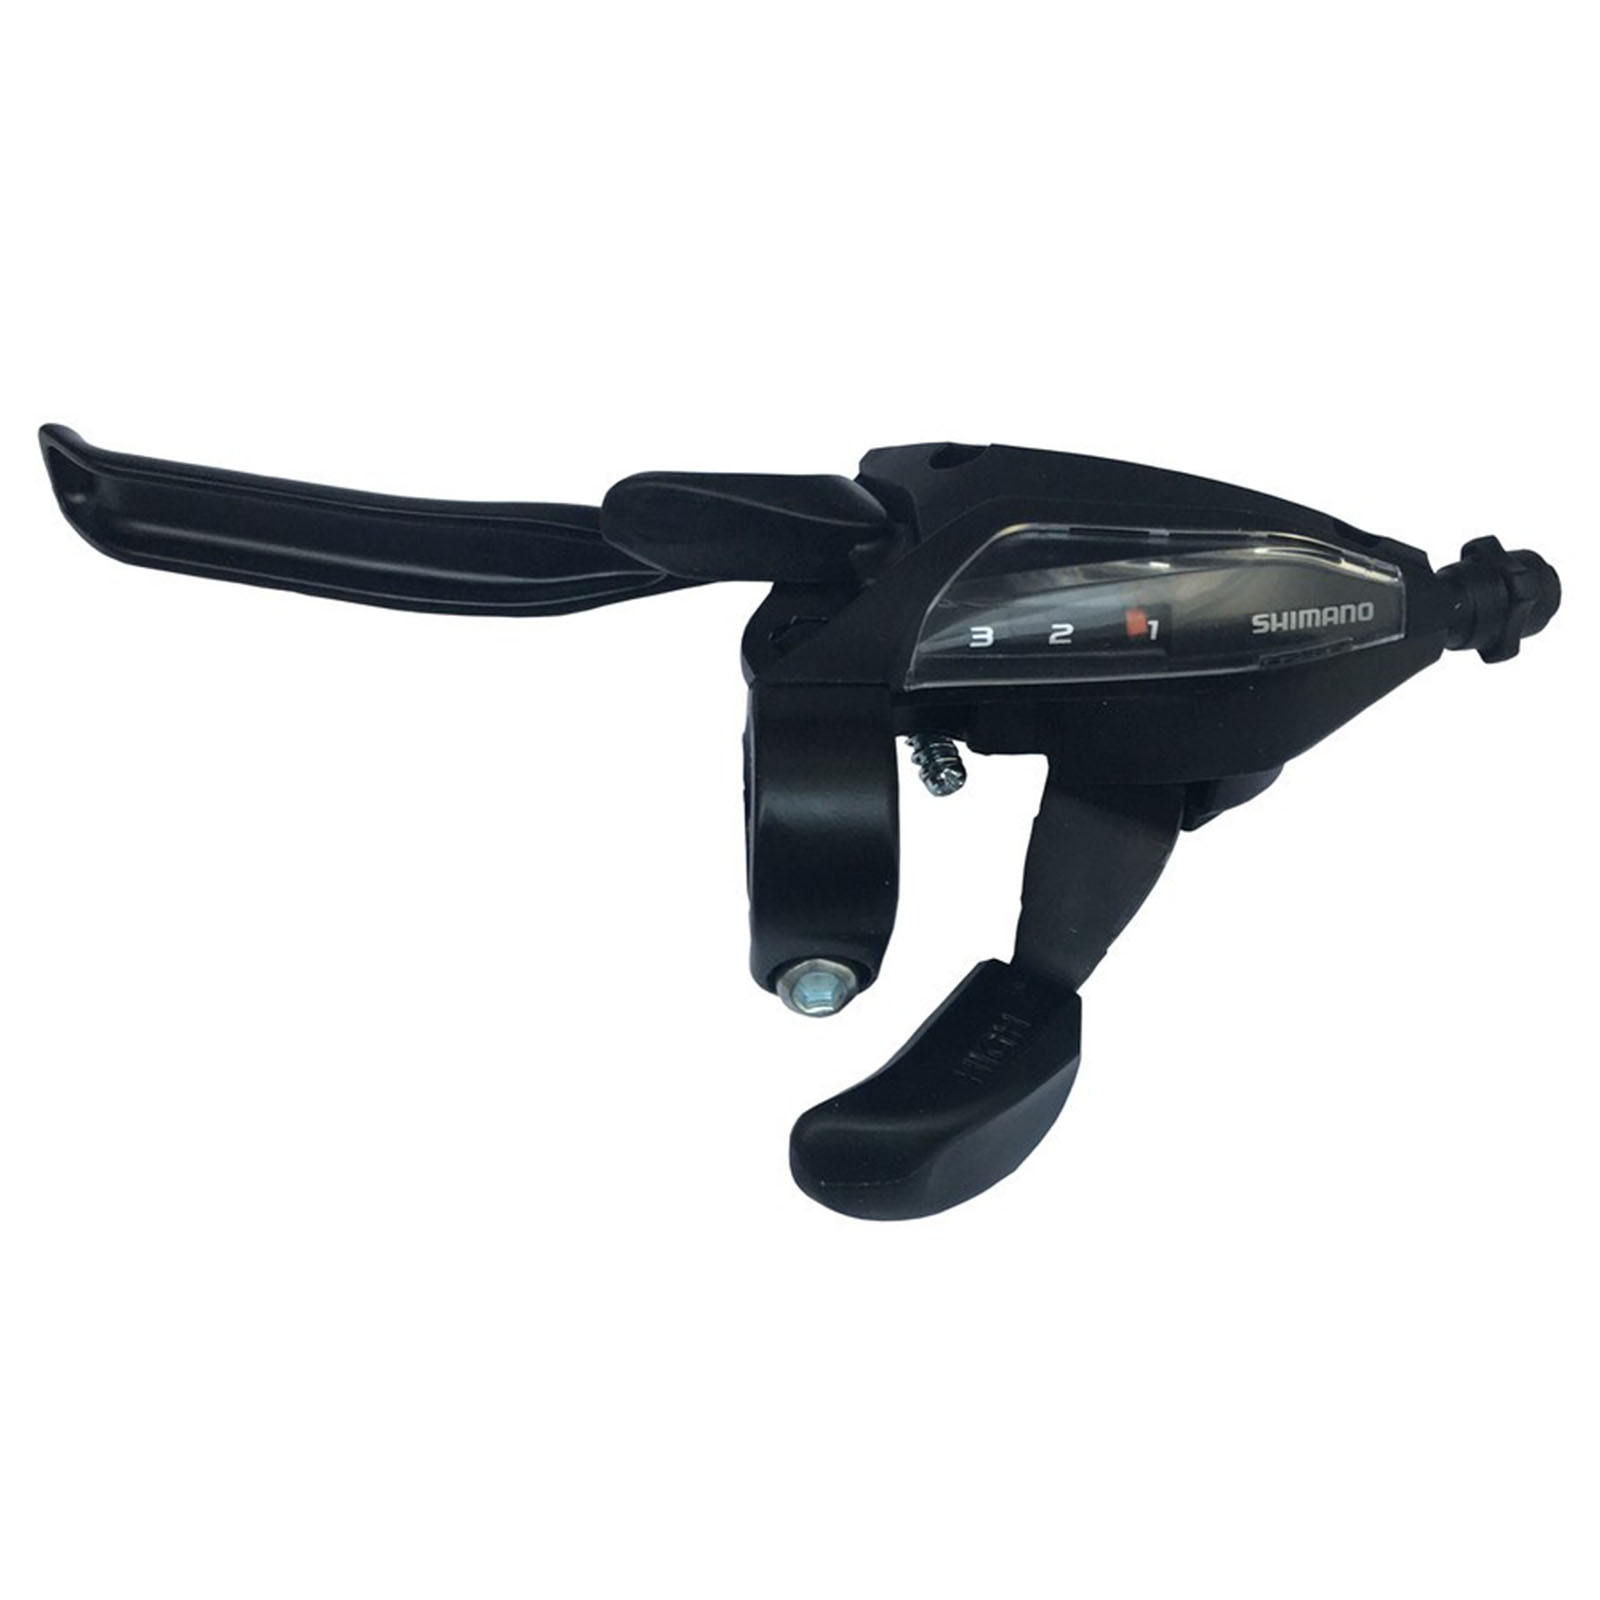 Shimano Schalthebel mit Bremsgriff links 3-f. 4-Finger V-Brake schwarz ST-EF500